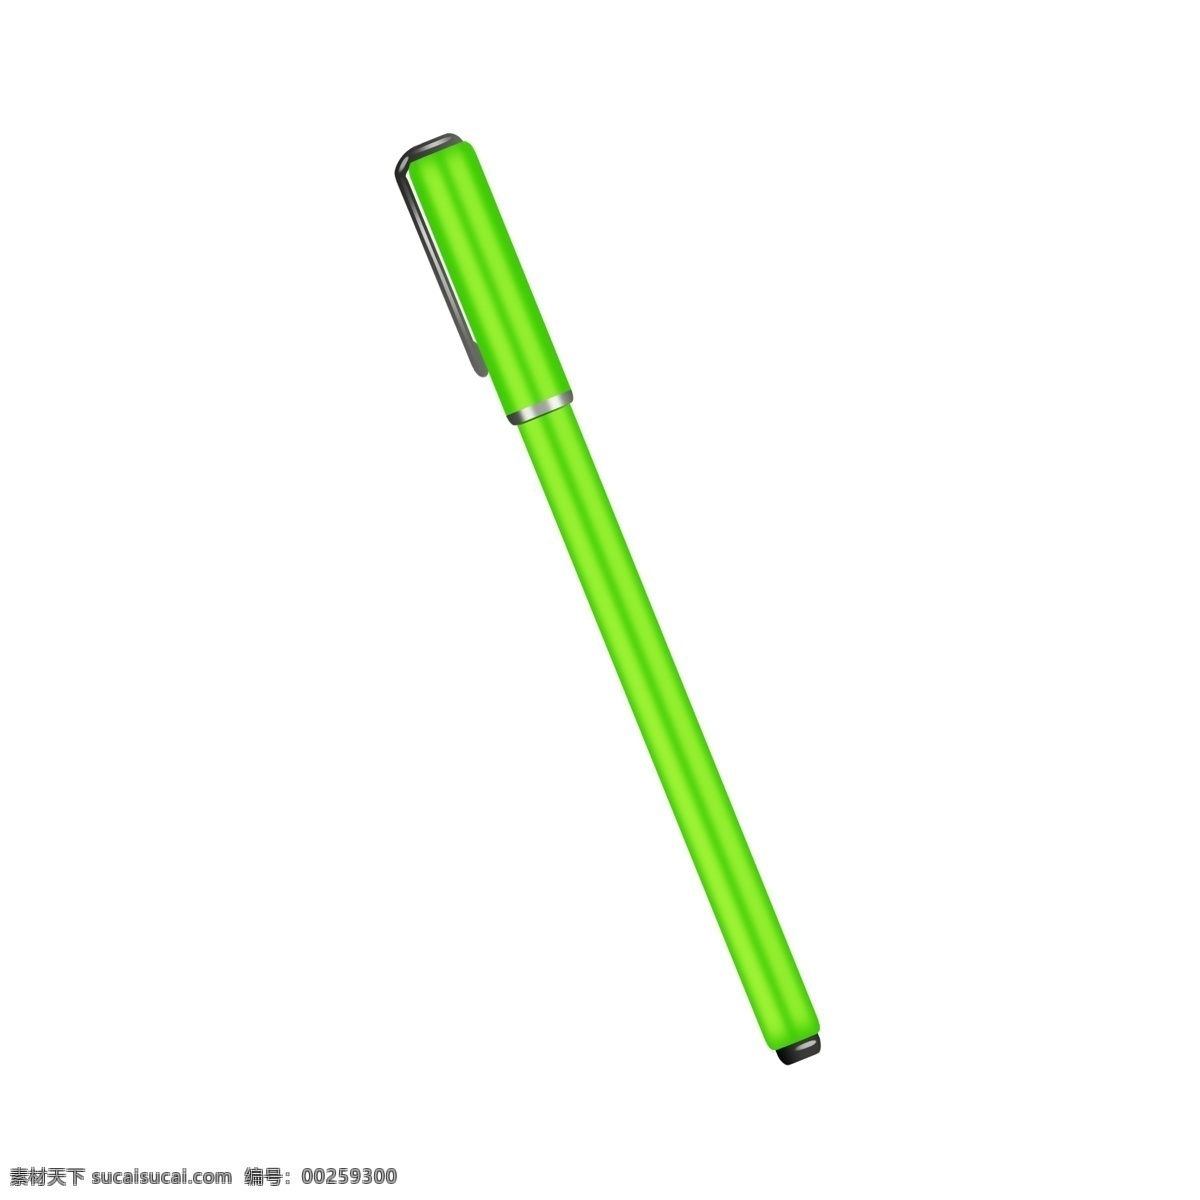 绿色 圆珠笔 插图 绿色圆珠笔 绿色的中性笔 钢笔 学习工具 办公用品 写字 绿色文具 生活用品